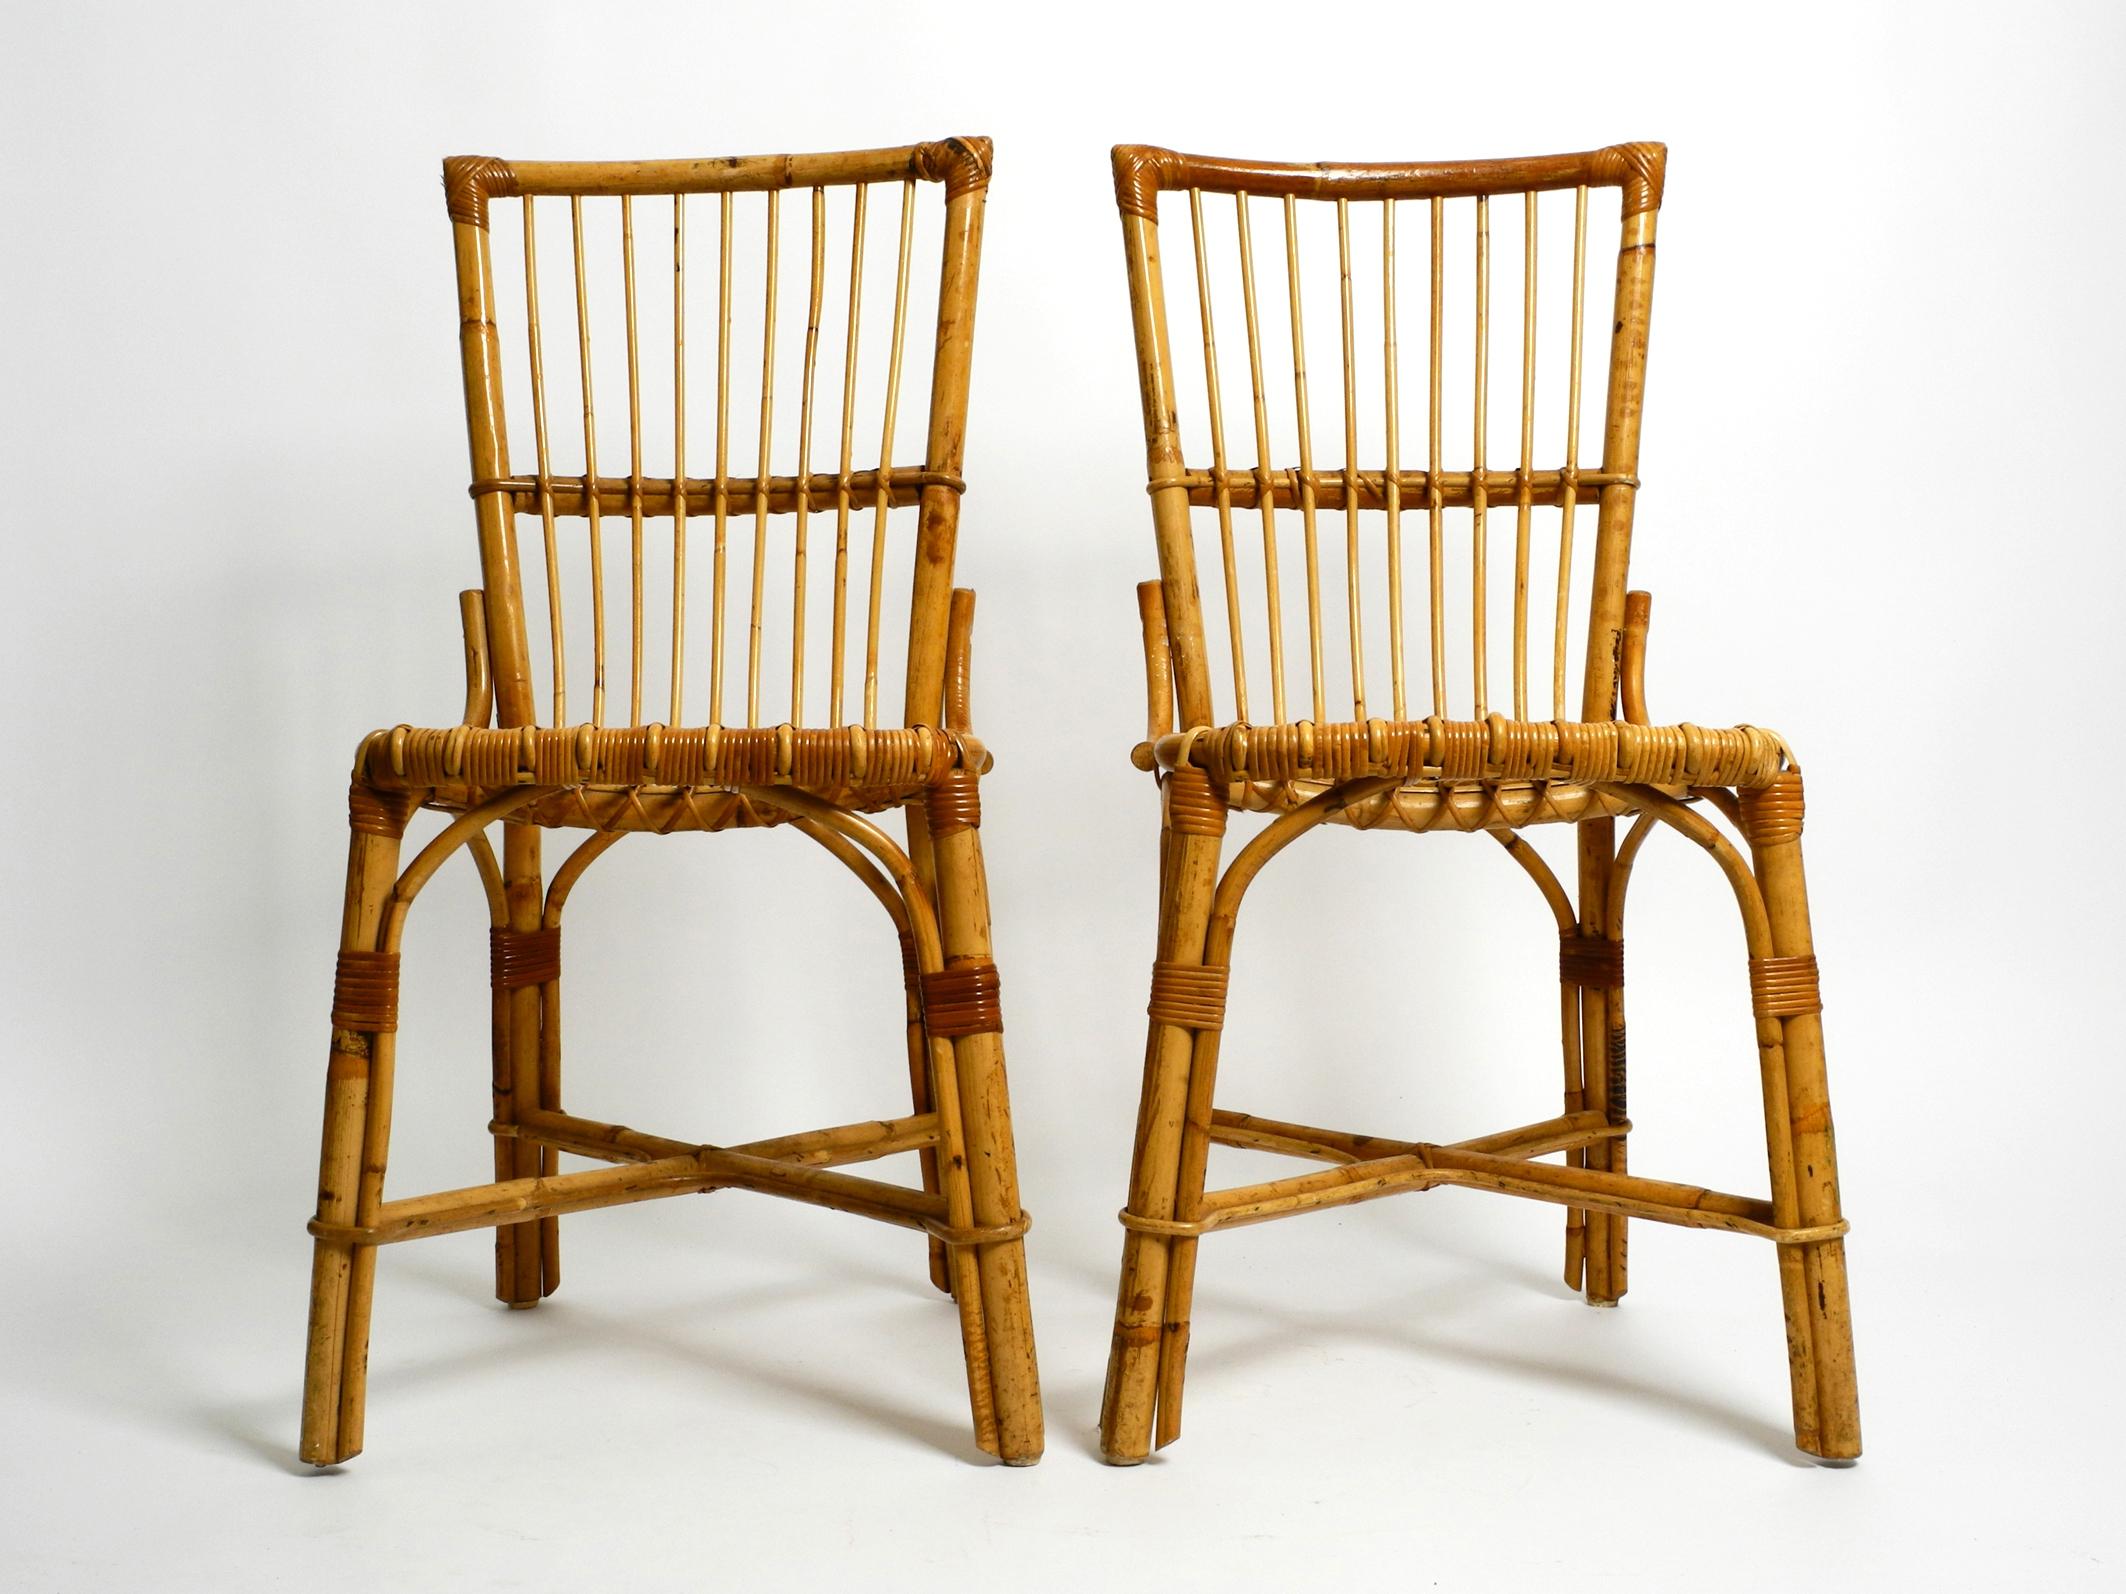 Zwei große 60er italienische Bambus Stühle in sehr gutem Vintagezustand.
Wunderschönes Design und sehr bequem zum Sitzen. 
Komplett aus Bambus sehr aufwendig hergestellt. 
Beide Stühle in gleichem gutem Zustand ohne Schäden und nicht wacklig.